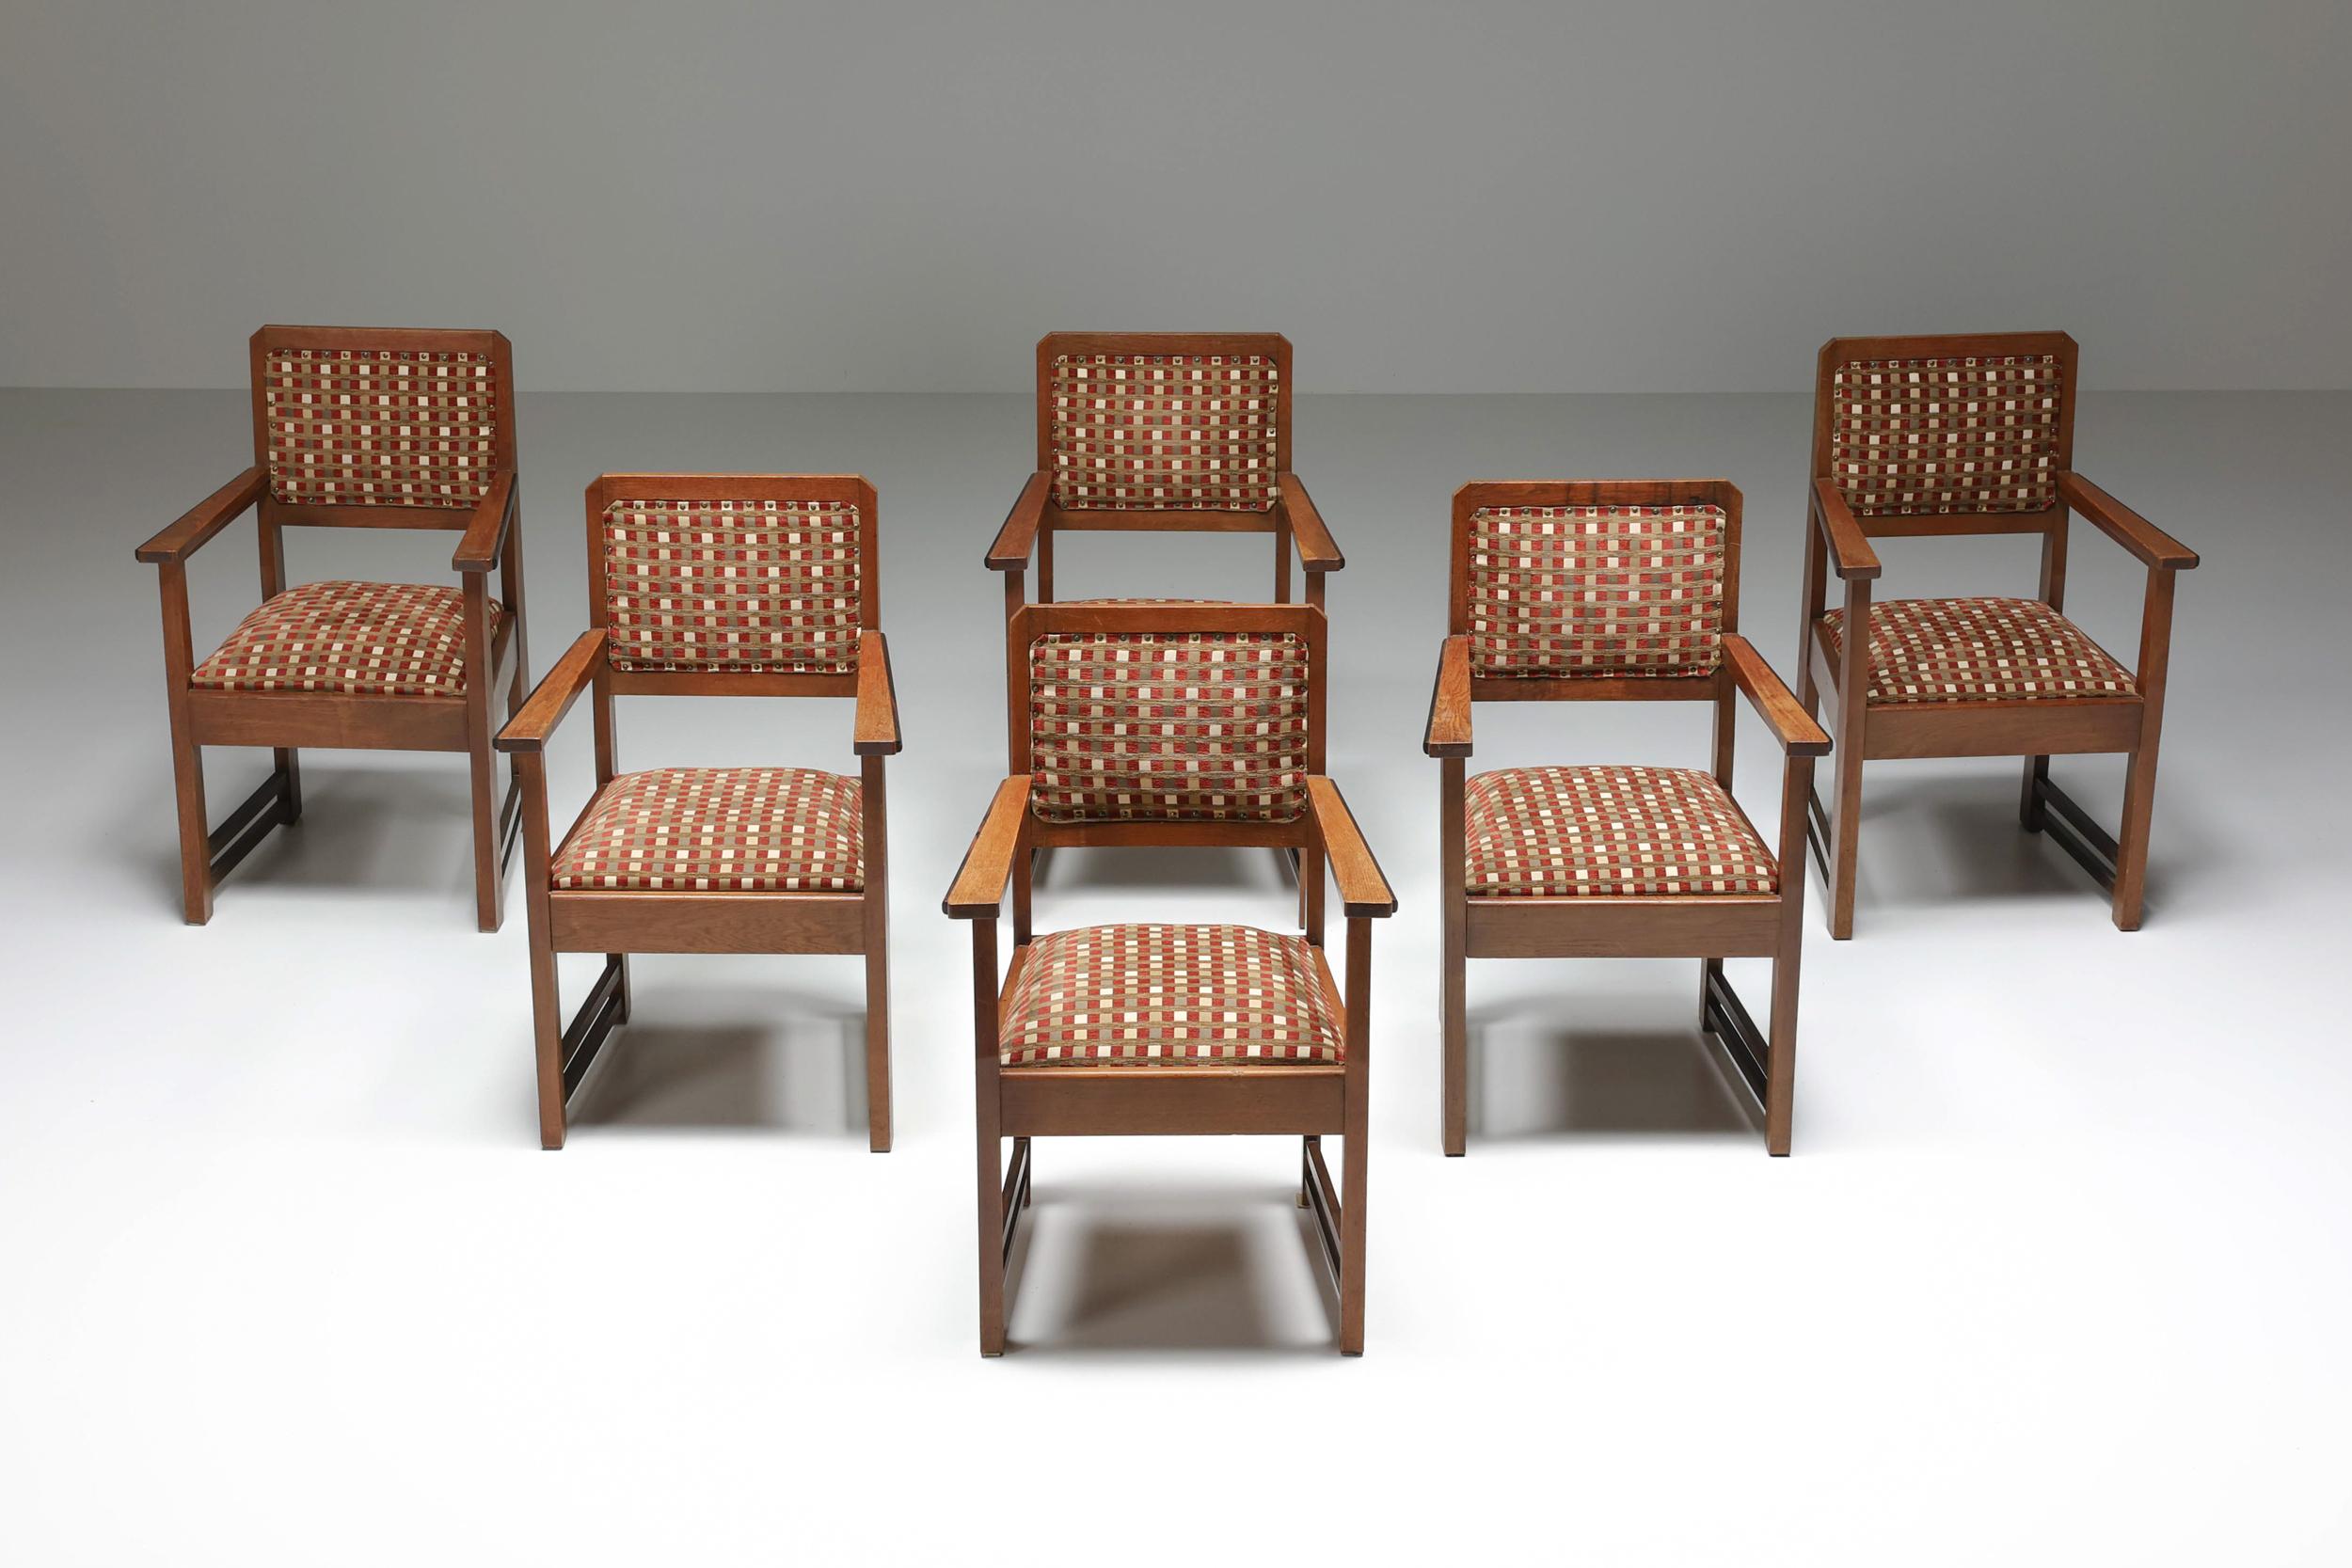 1940's, Dutch Modern, Lounge Chair, Amsterdamse school, Armchair, Art Deco, Expressionism, Jugendstil. 

Ensemble de six chaises modernes hollandaises de l'école d'Amsterdam. La tapisserie d'origine confère une qualité authentique. L'école